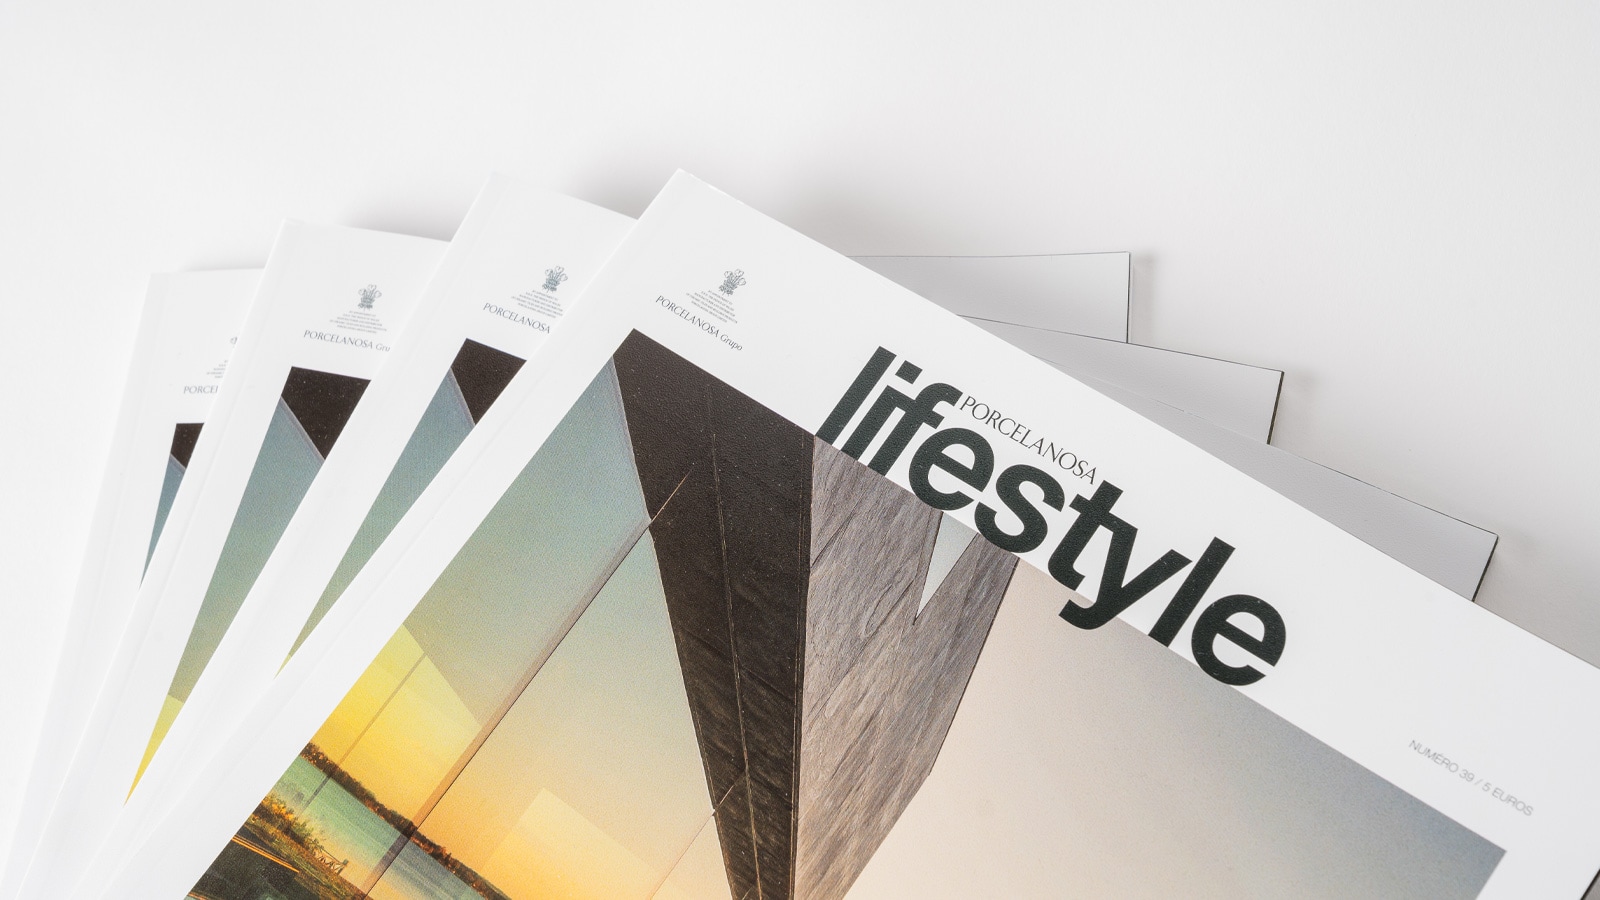 Журнал Lifestyle показывает дизайнерские проекты Сантьяго Калатравы и Ласаро Росы-Виолана